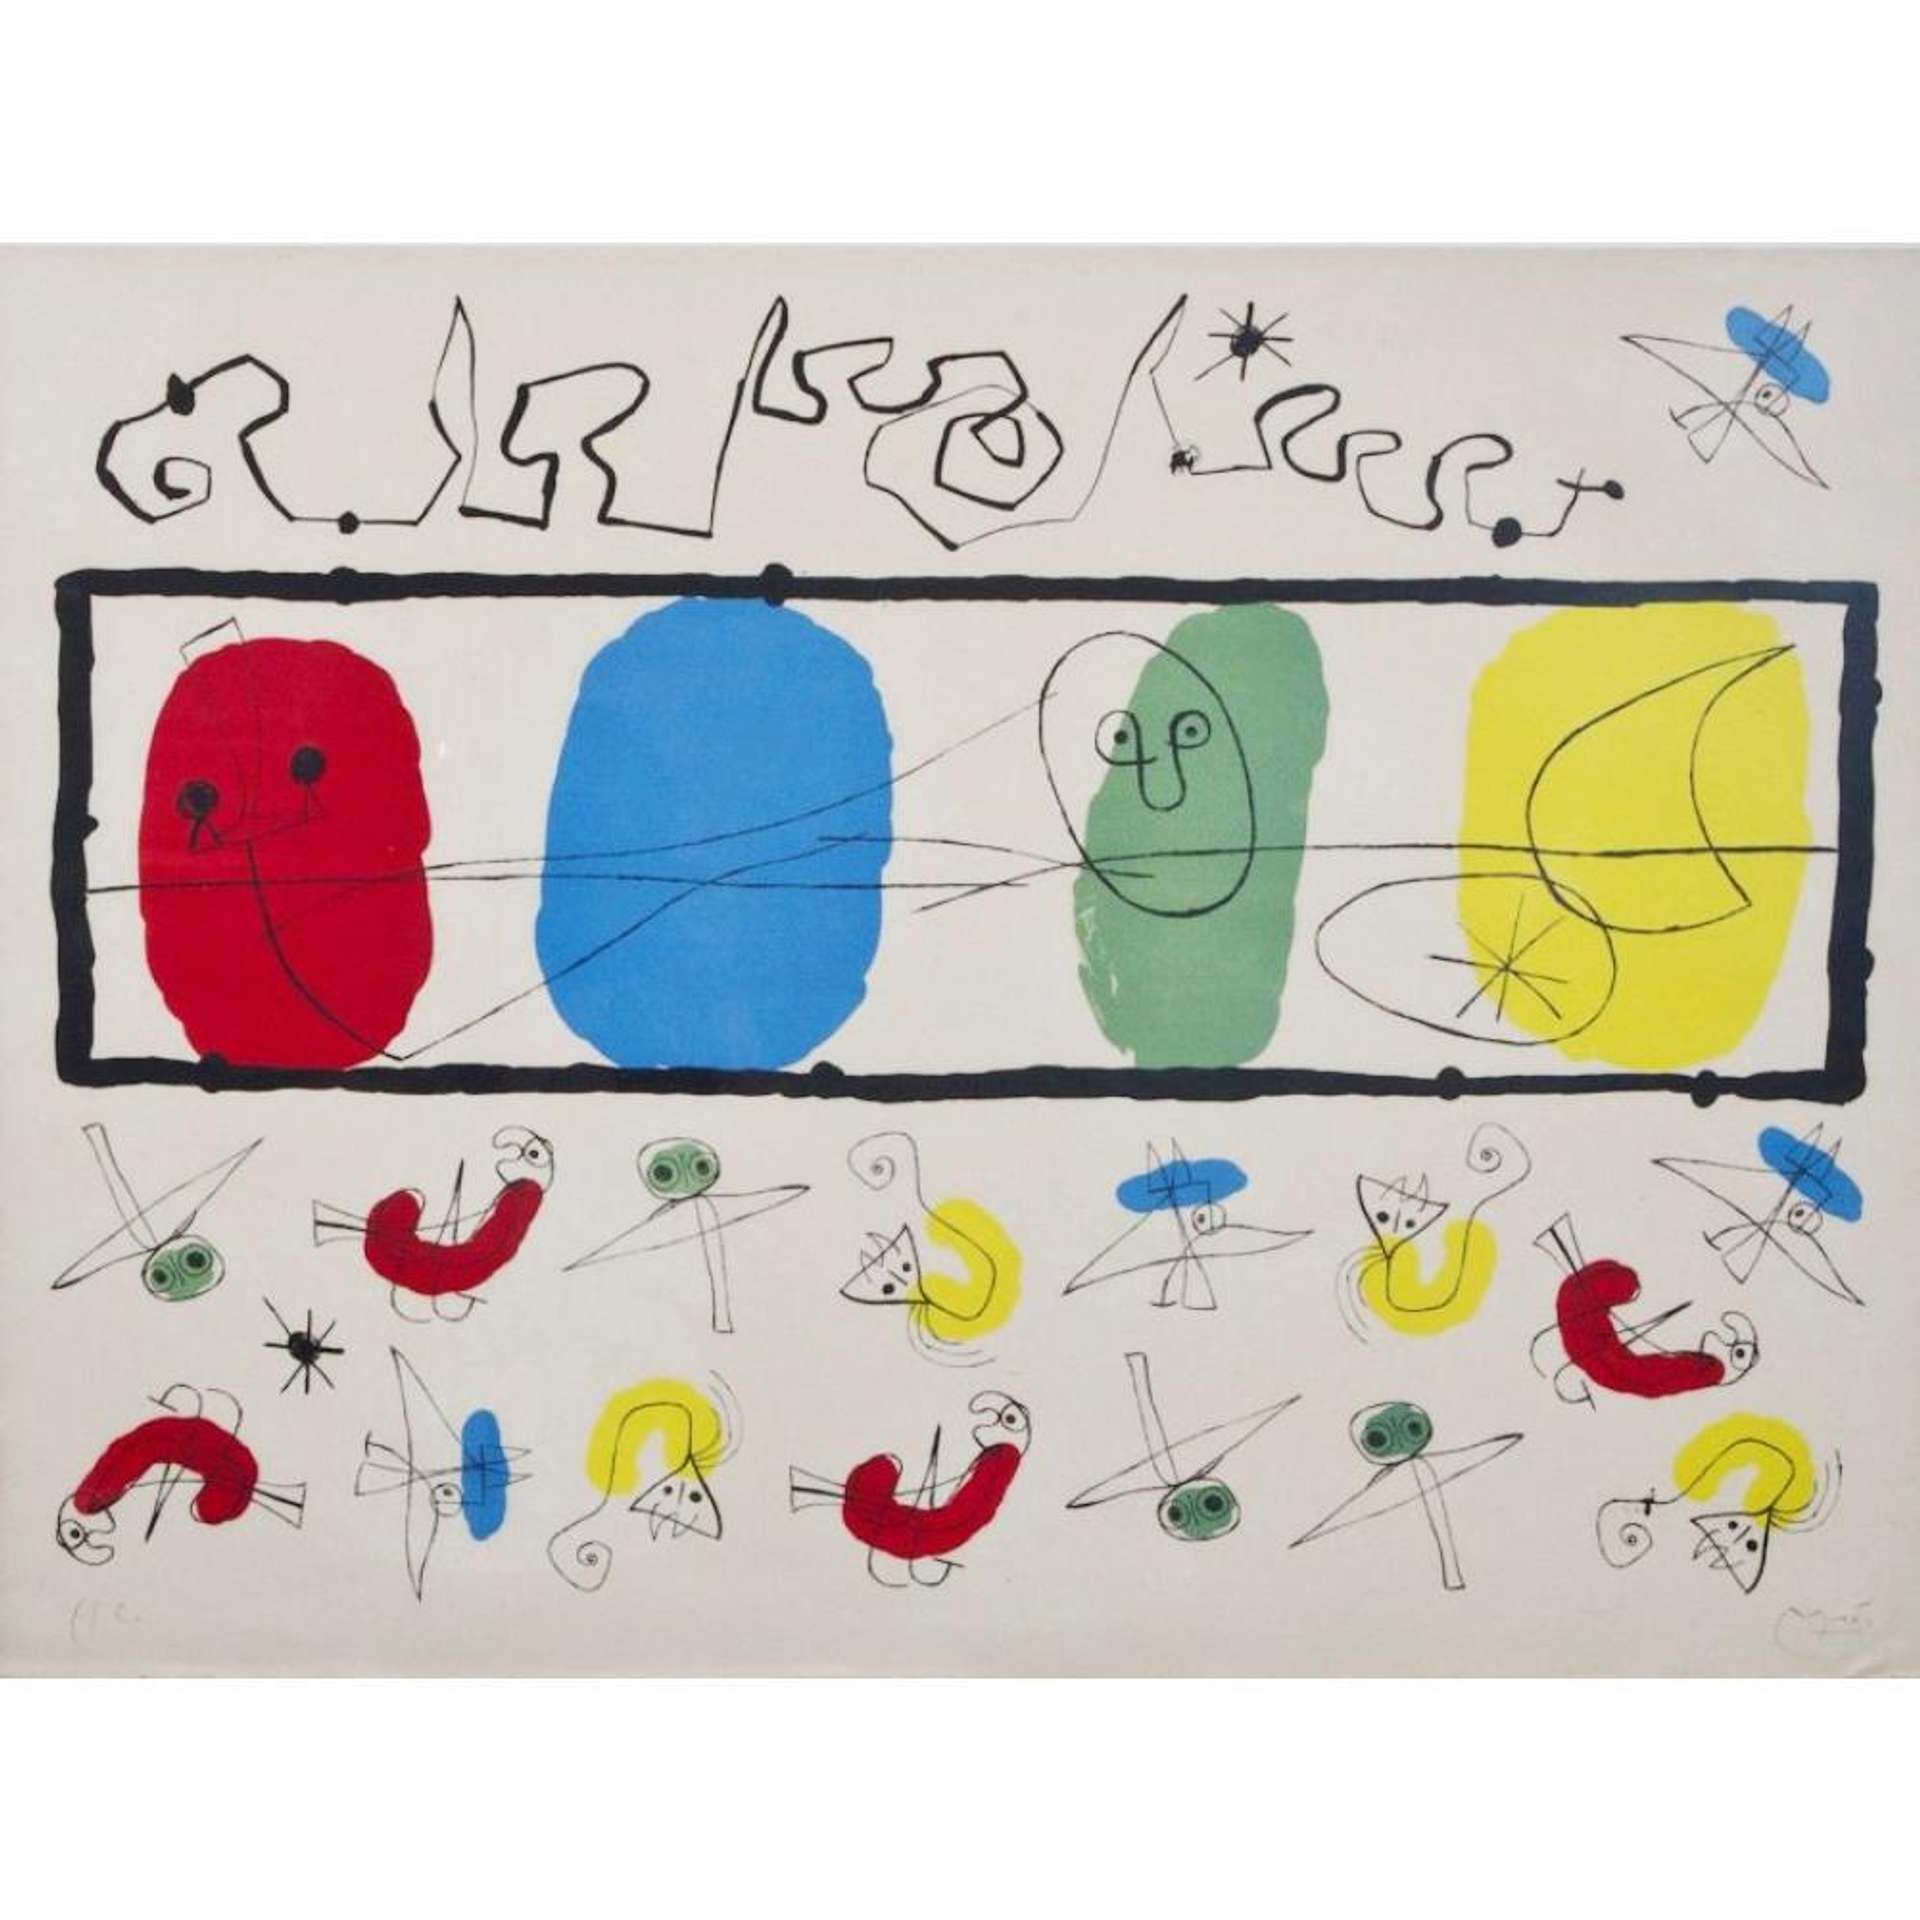 Les Oiseaux - Signed Print by Joan Miró 1956 - MyArtBroker